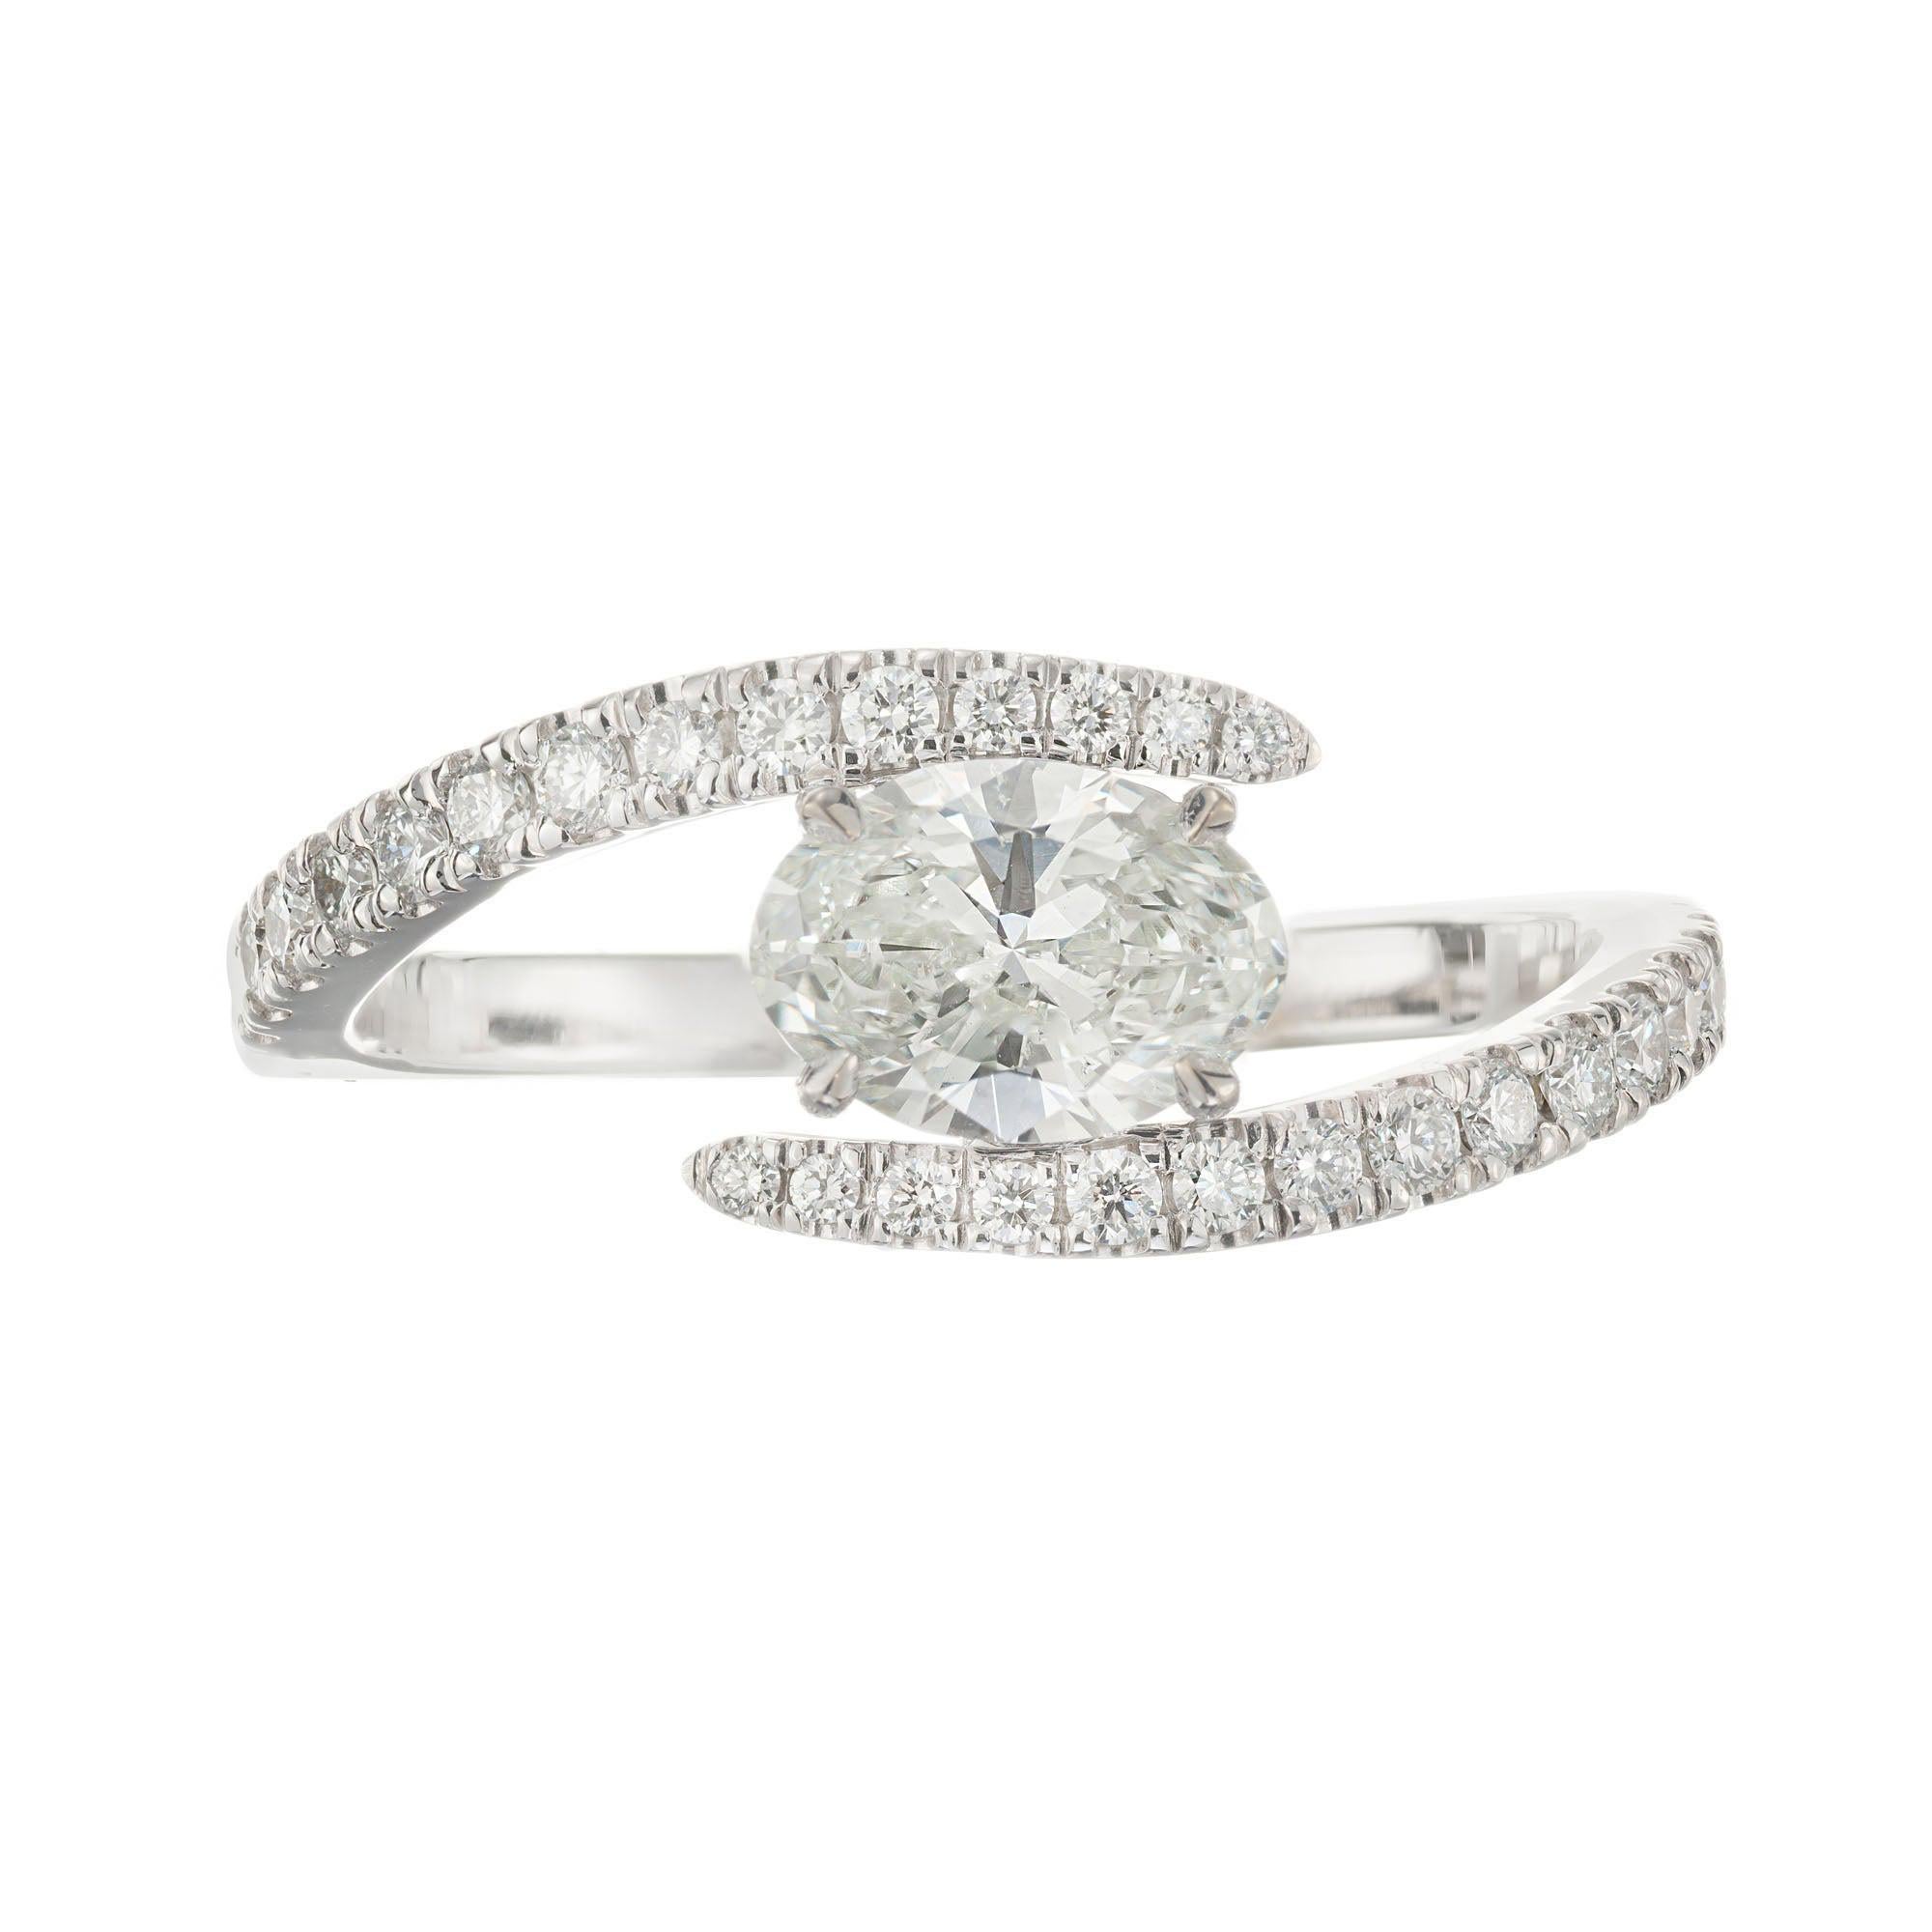 Peter Suchy, Verlobungsring aus Weißgold mit GIA-zertifiziertem 0,67 Karat ovalem Diamant